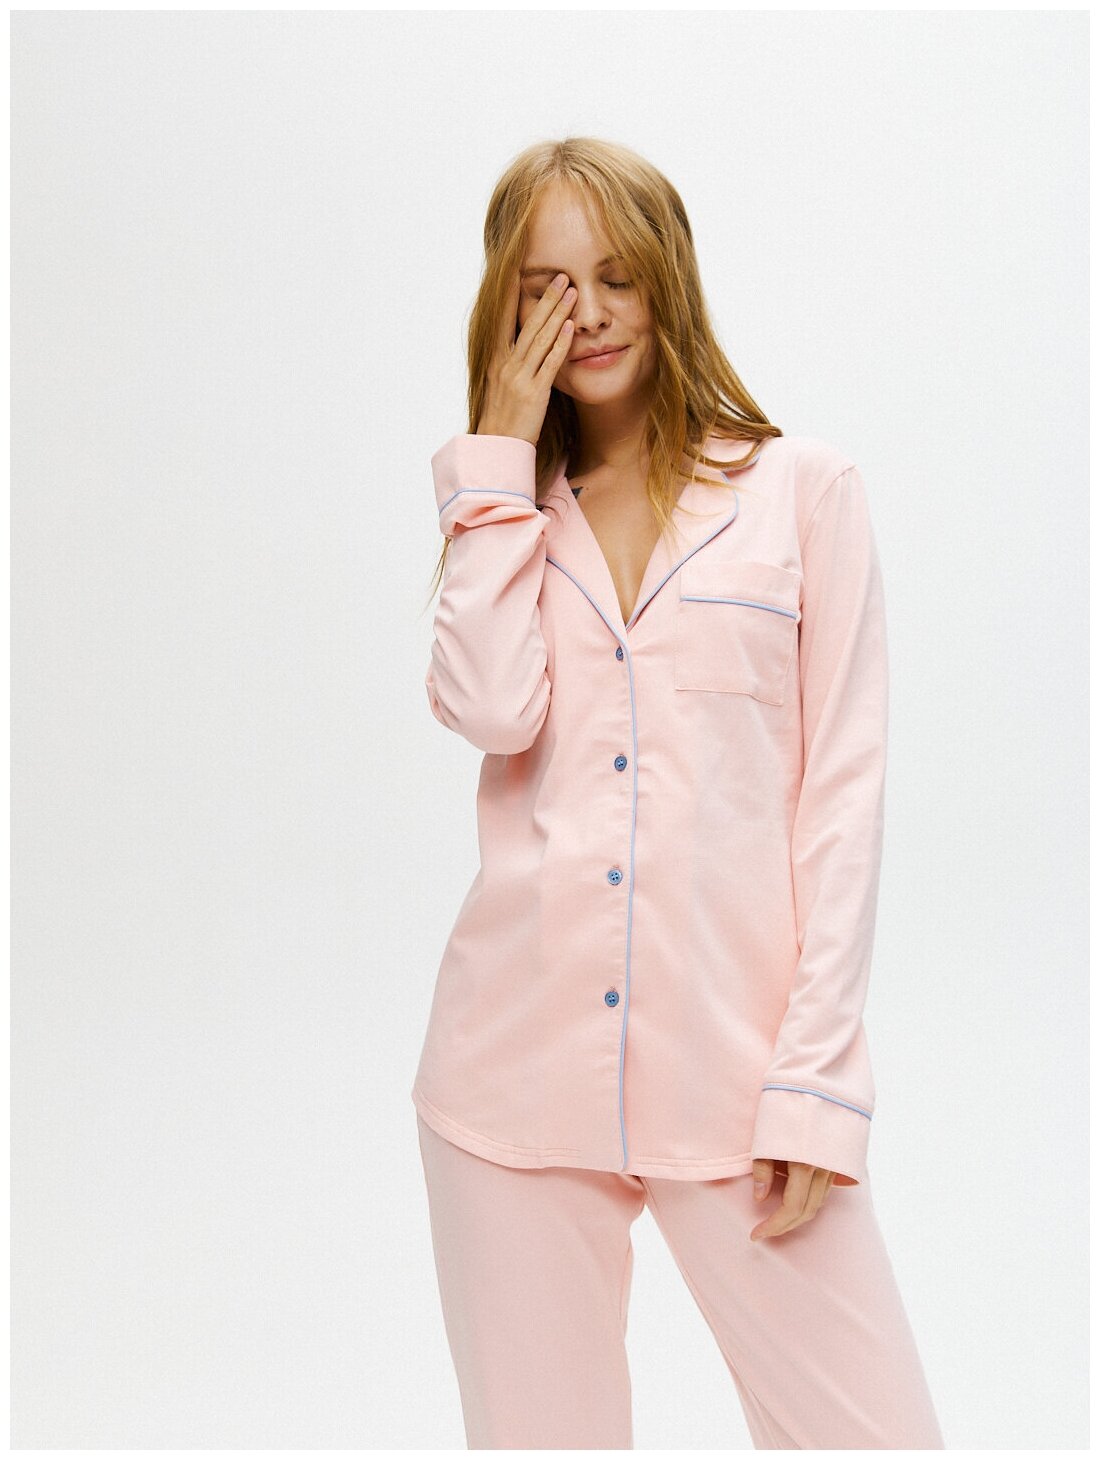 Пижама Ihomewear, рубашка, брюки, длинный рукав, трикотажная, размер S(158-164), розовый - фотография № 3